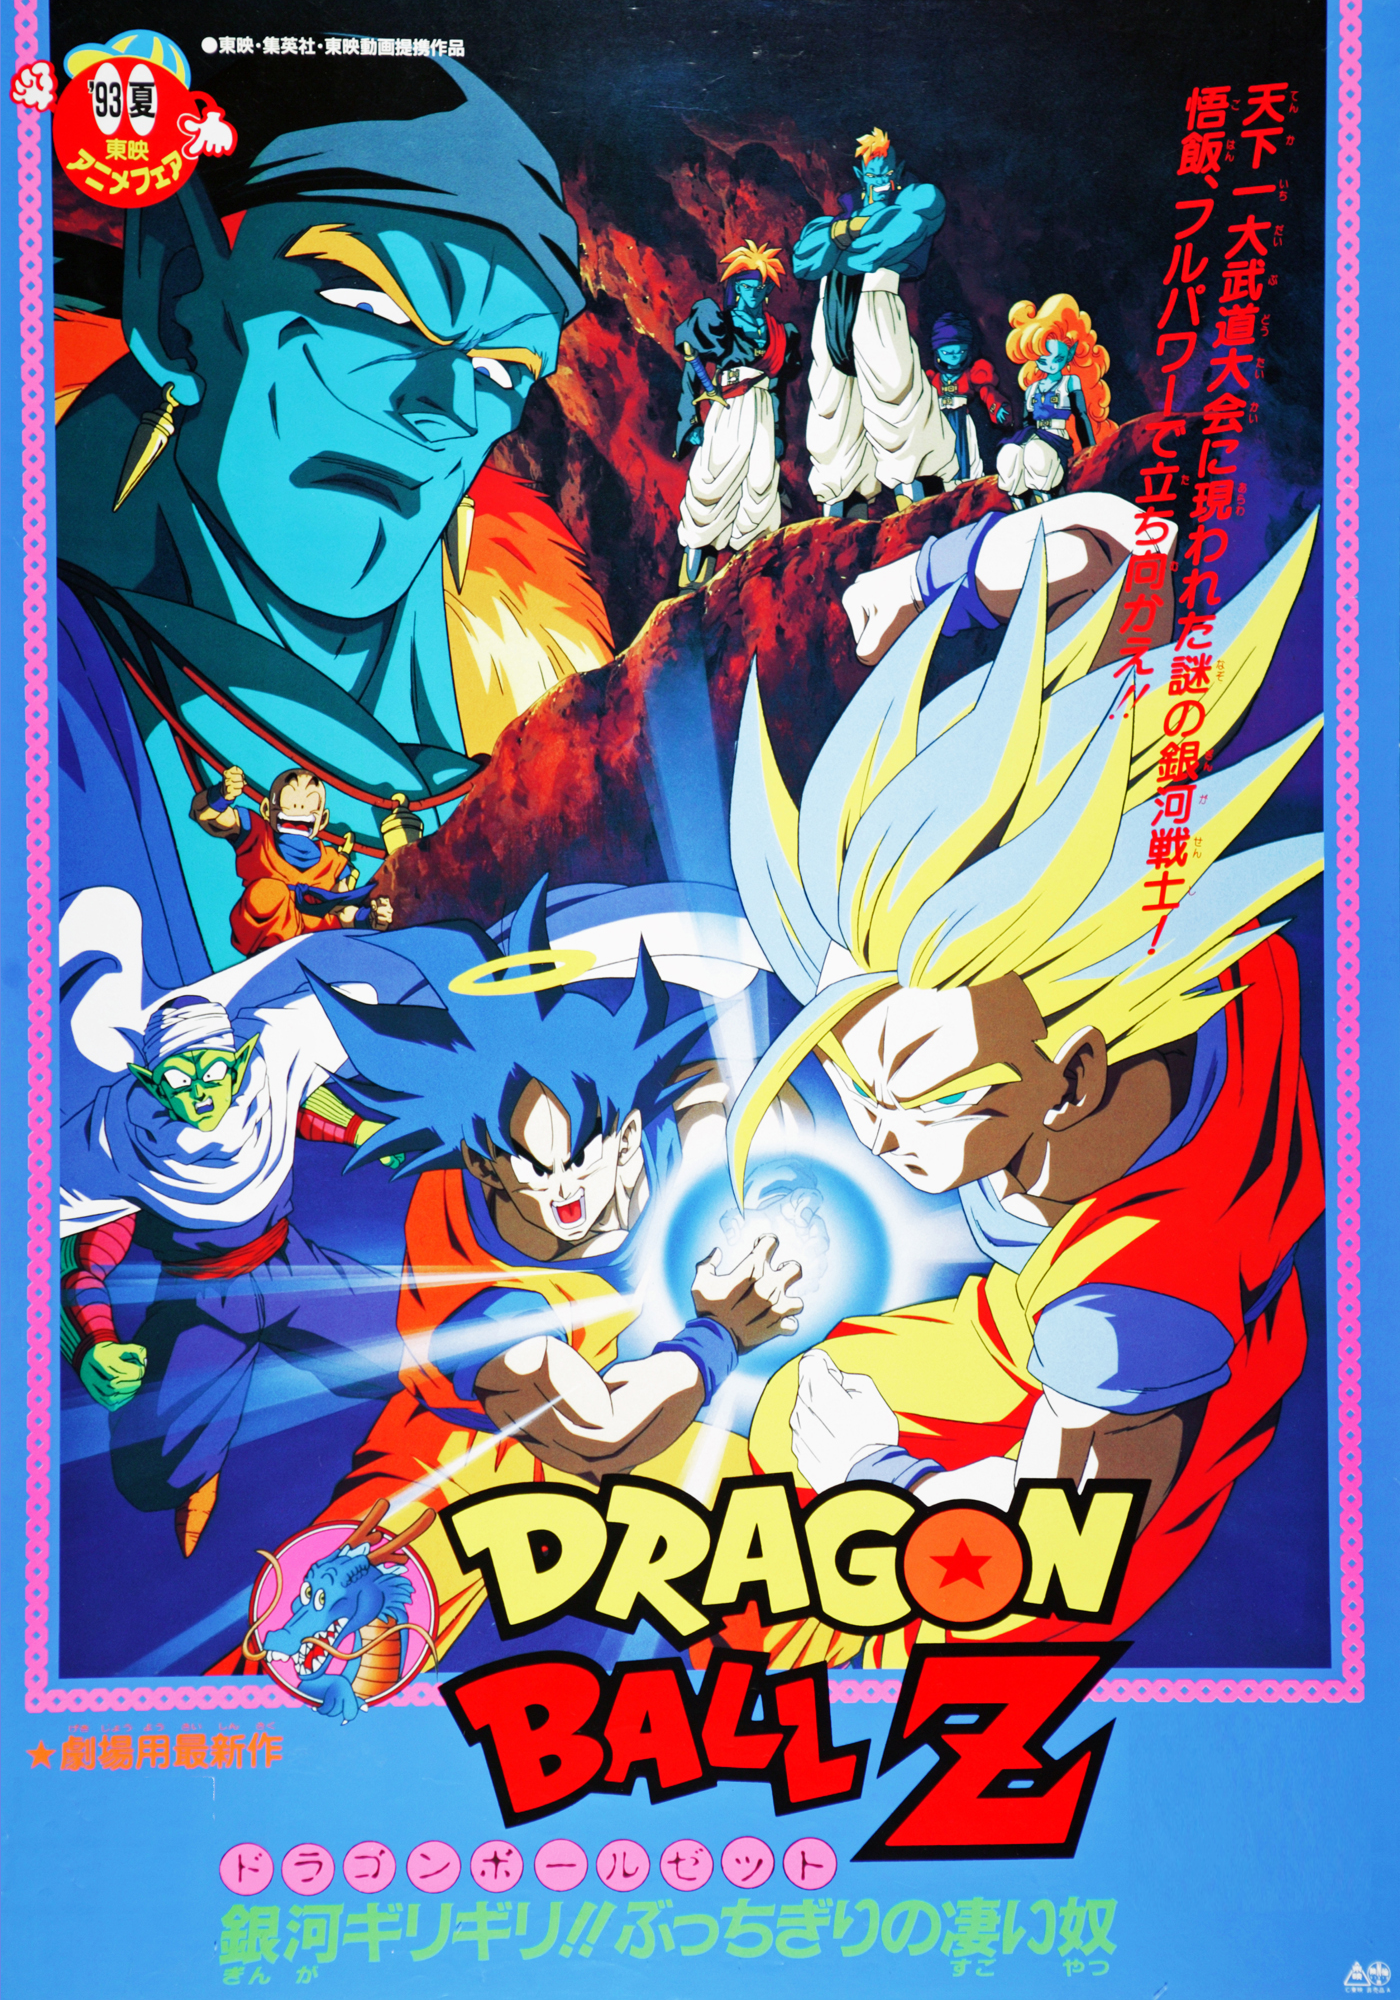 Dragon Ball Z movie 9 | Japanese Anime Wiki | FANDOM powered by Wikia